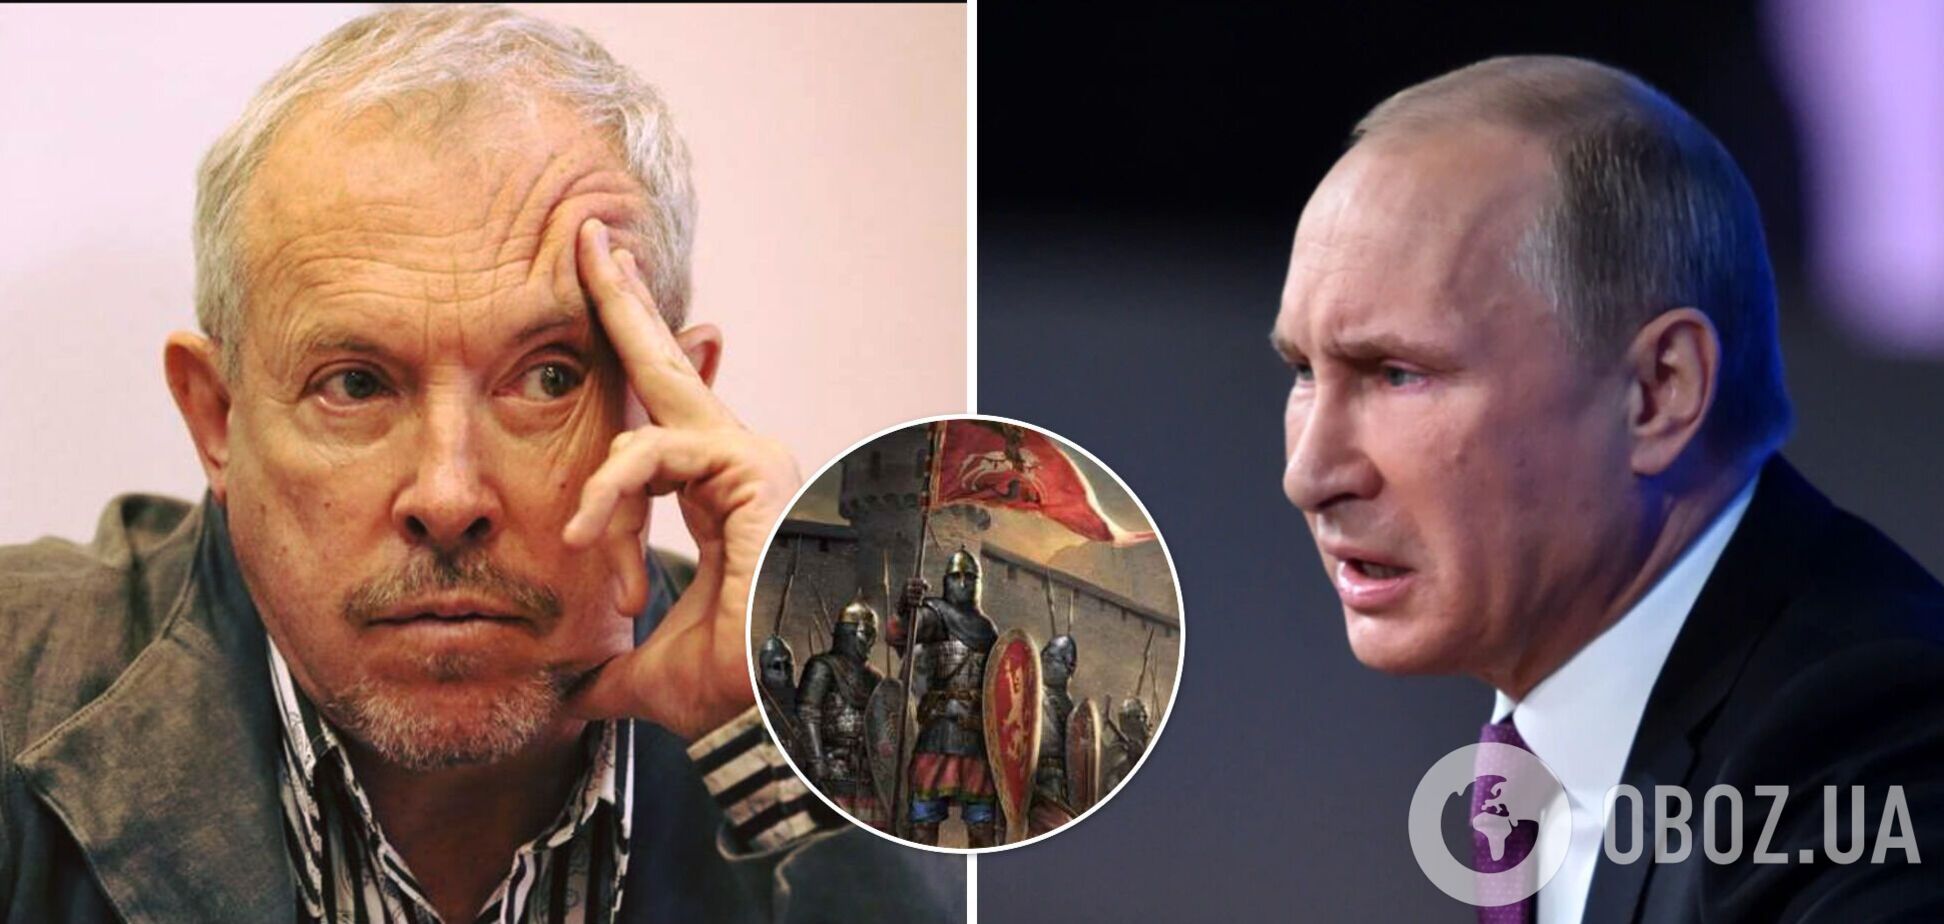 Макаревич – о Путине: тысячи погибших из-за больных амбиций одного человека. Мы в Средневековье?